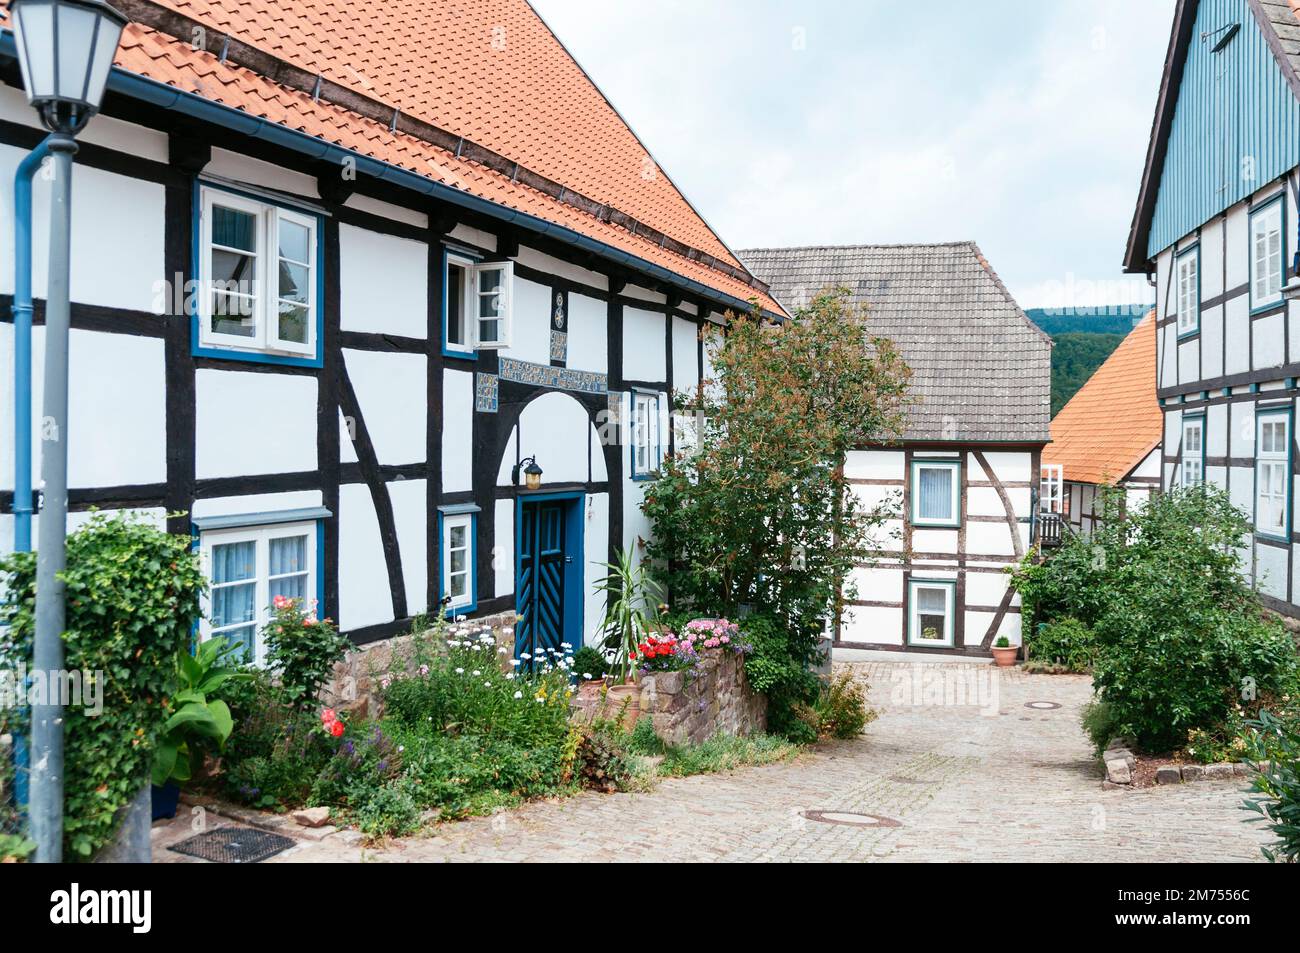 Strada con vecchie case a traliccio tradizionali a Schwalenberg. Foto Stock